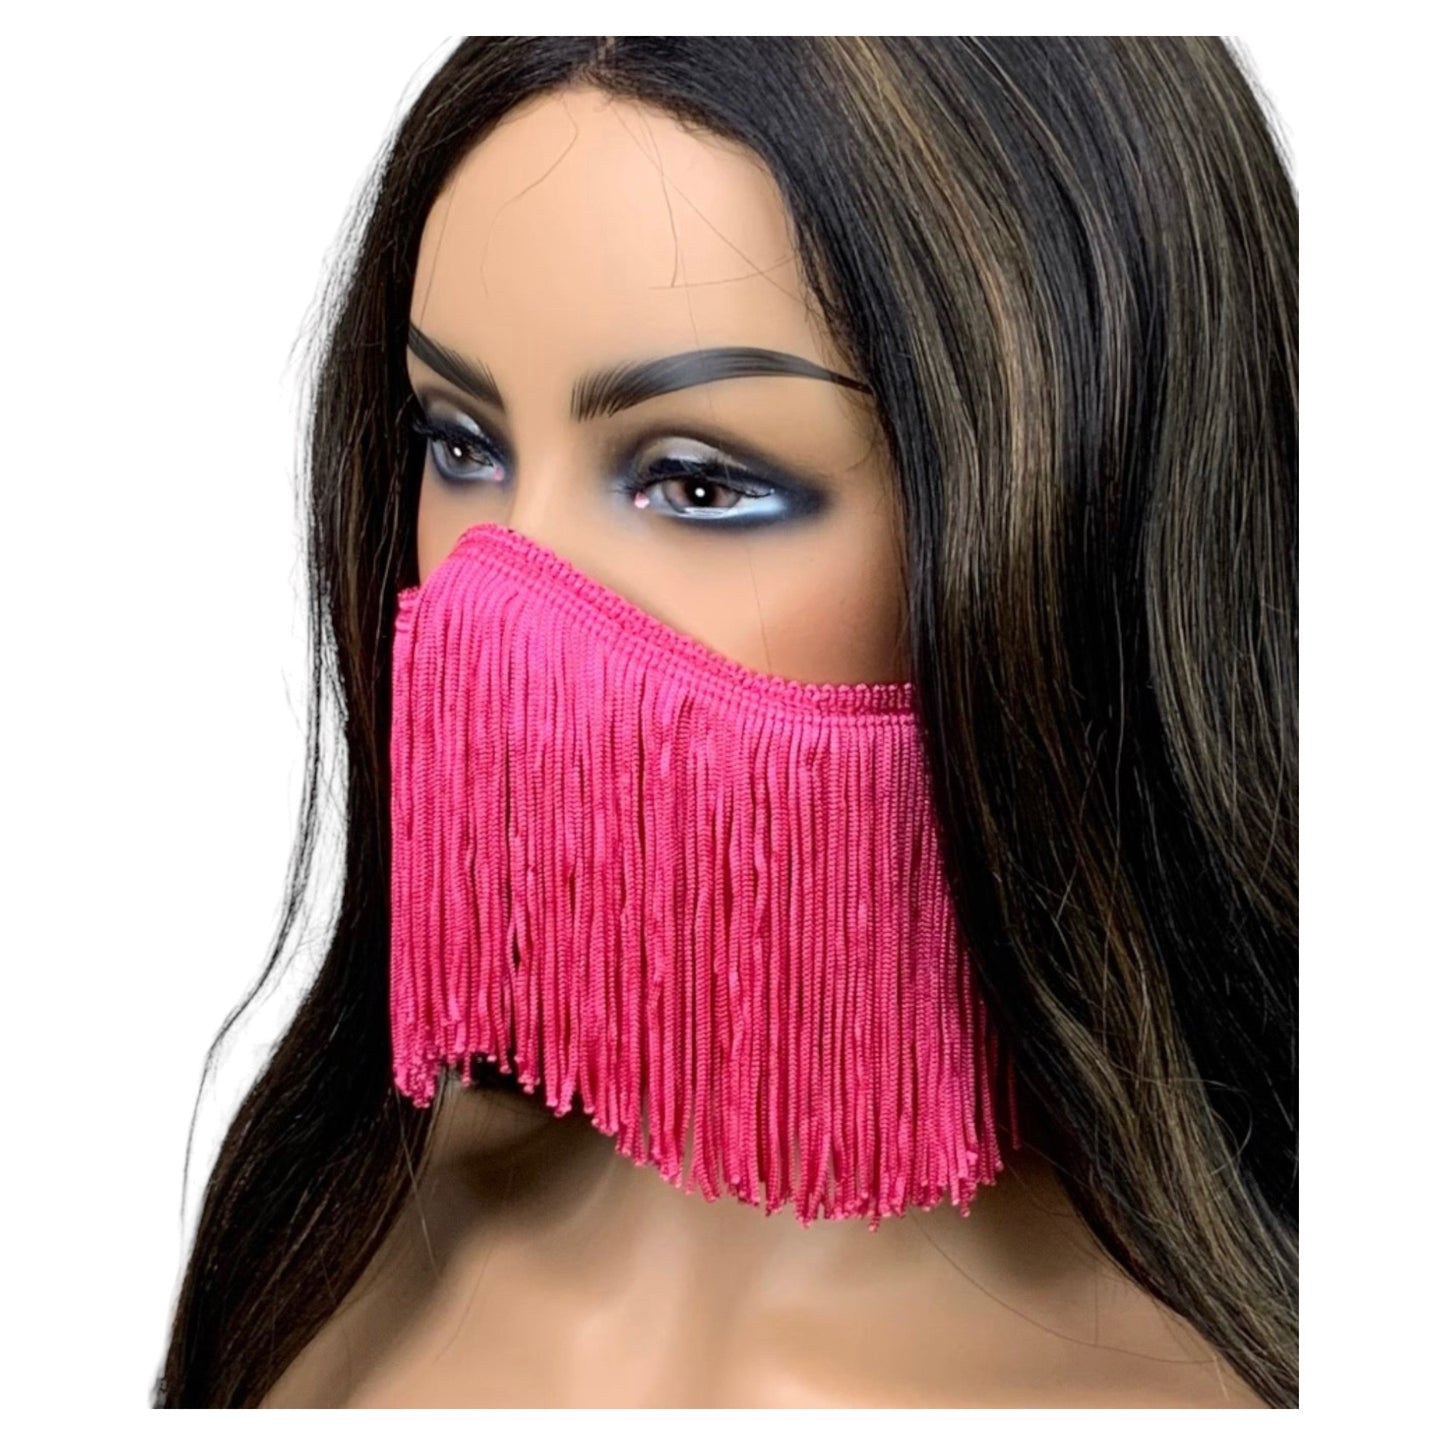 Black Face Mask with Hot Pink Fringe